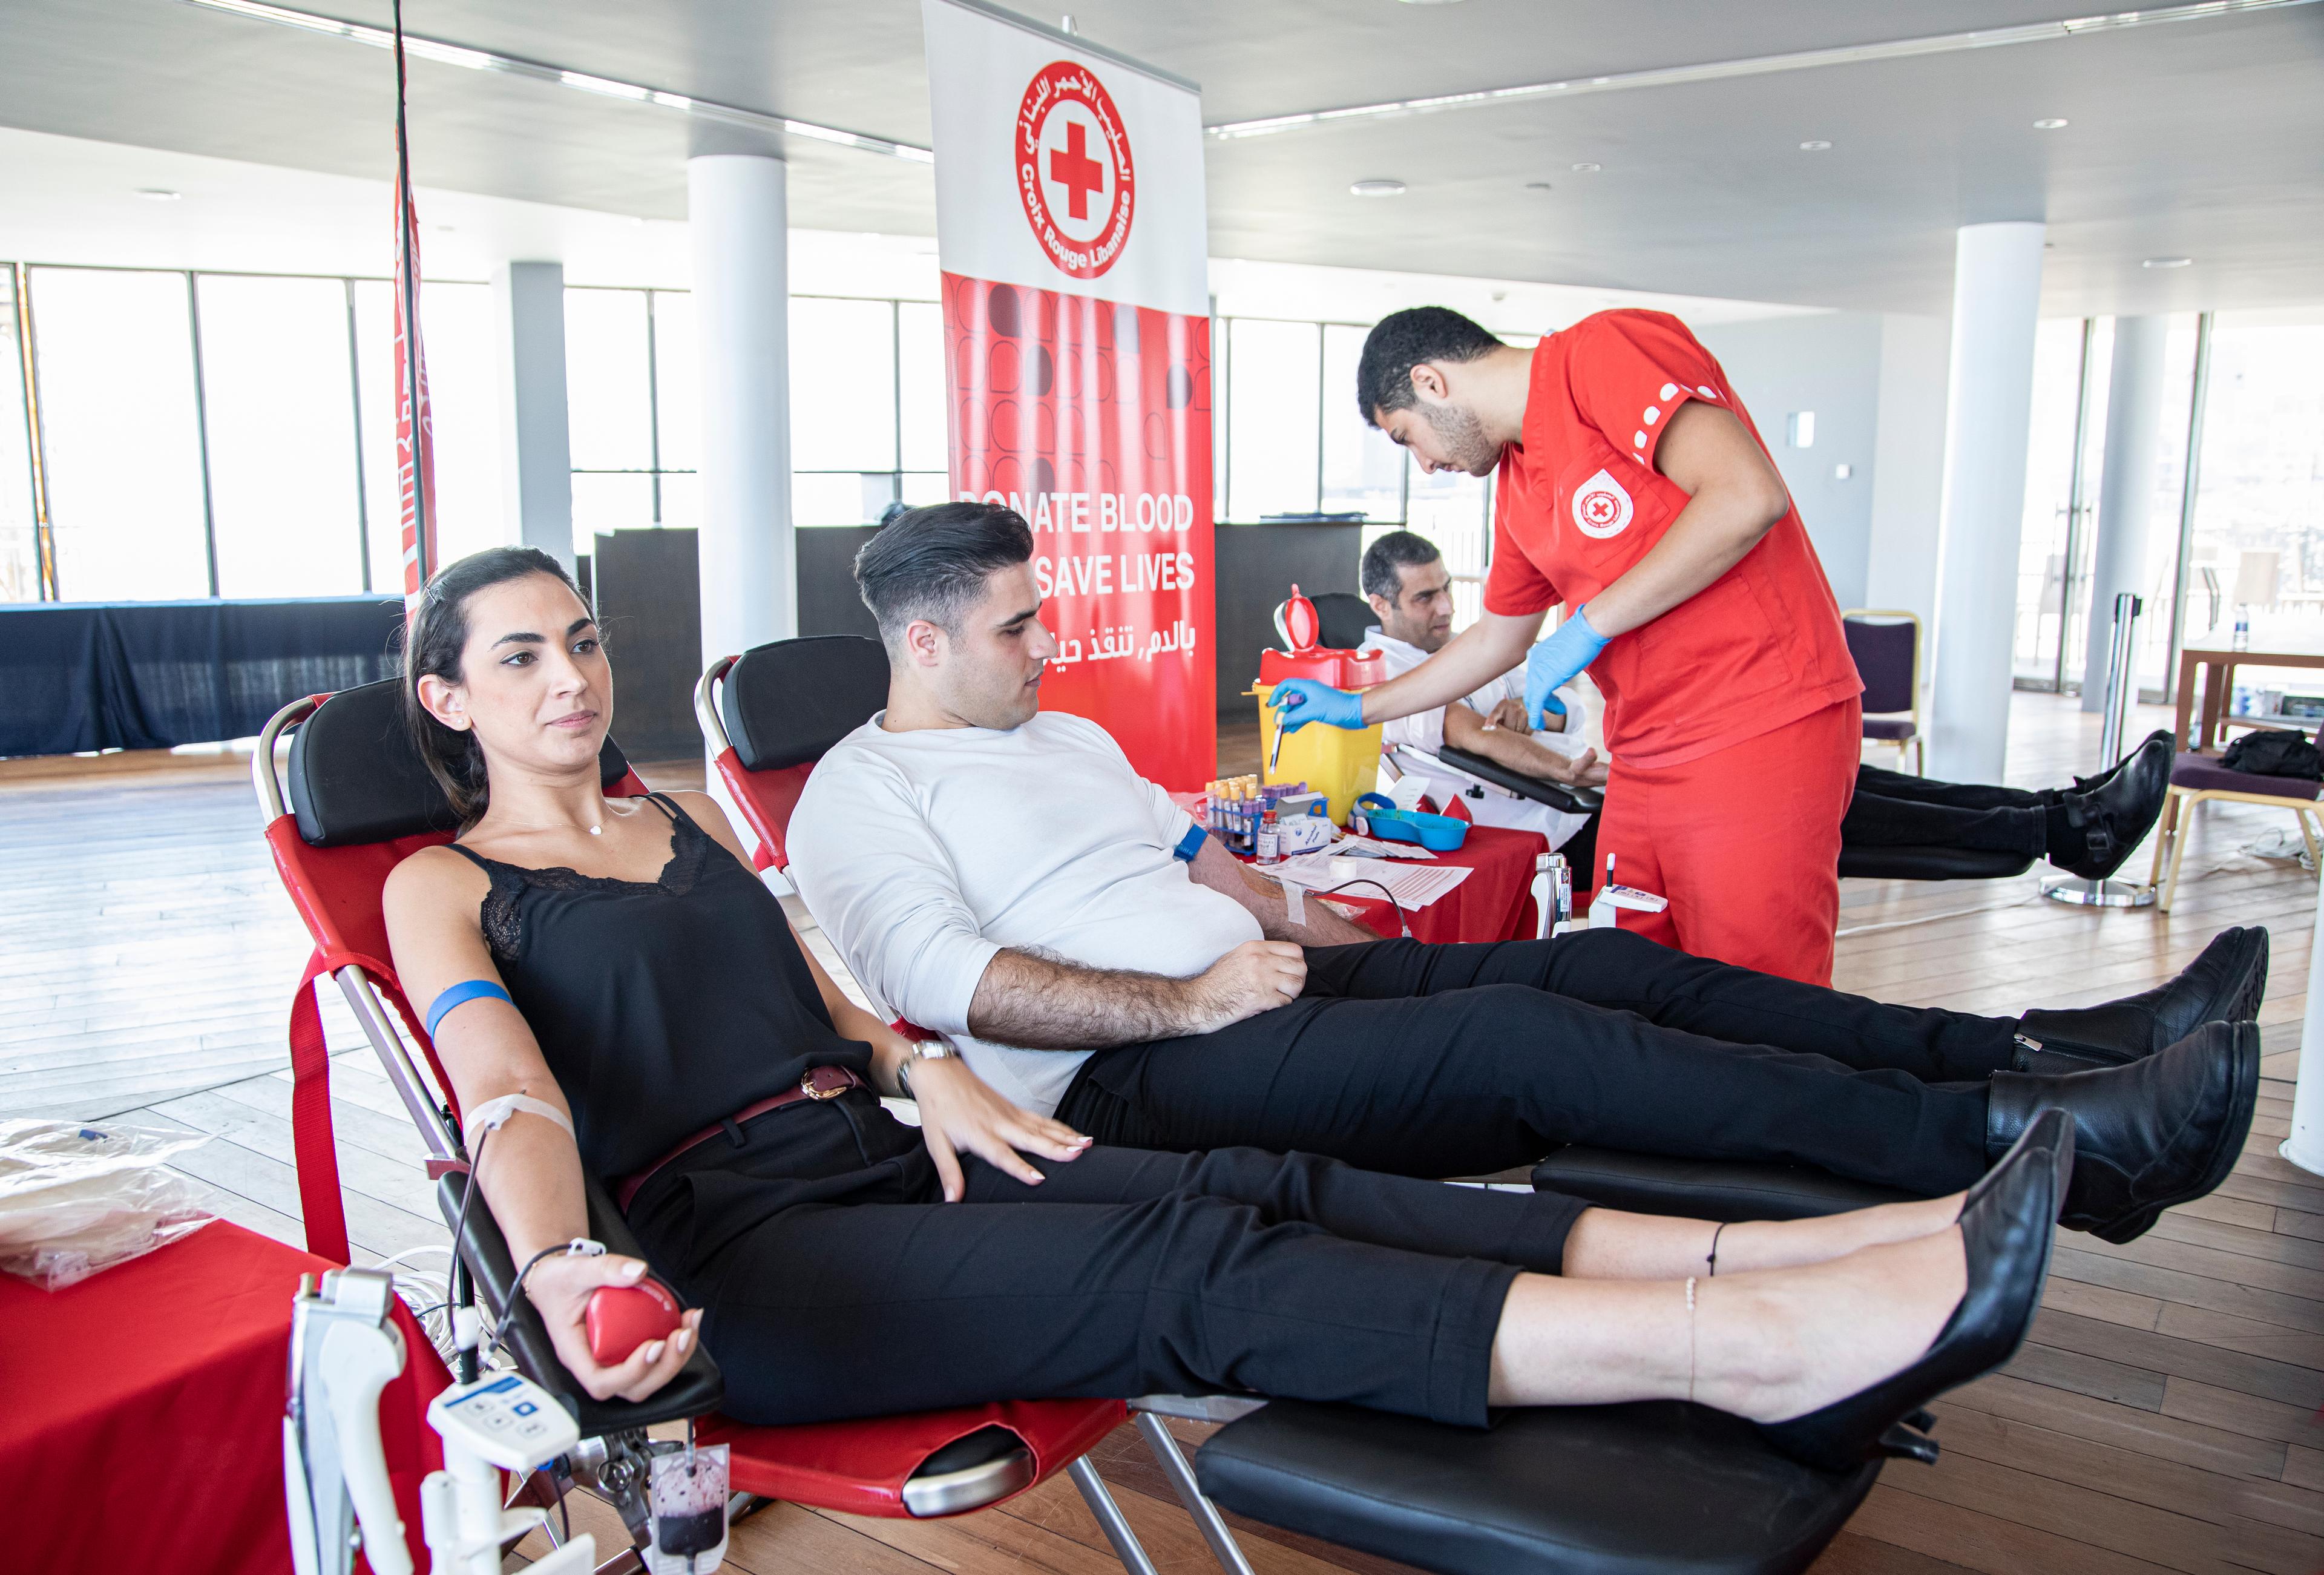 Tre persone donano il sangue alla Croce Rossa libanese. Sono sdraiate su sedie reclinabili.